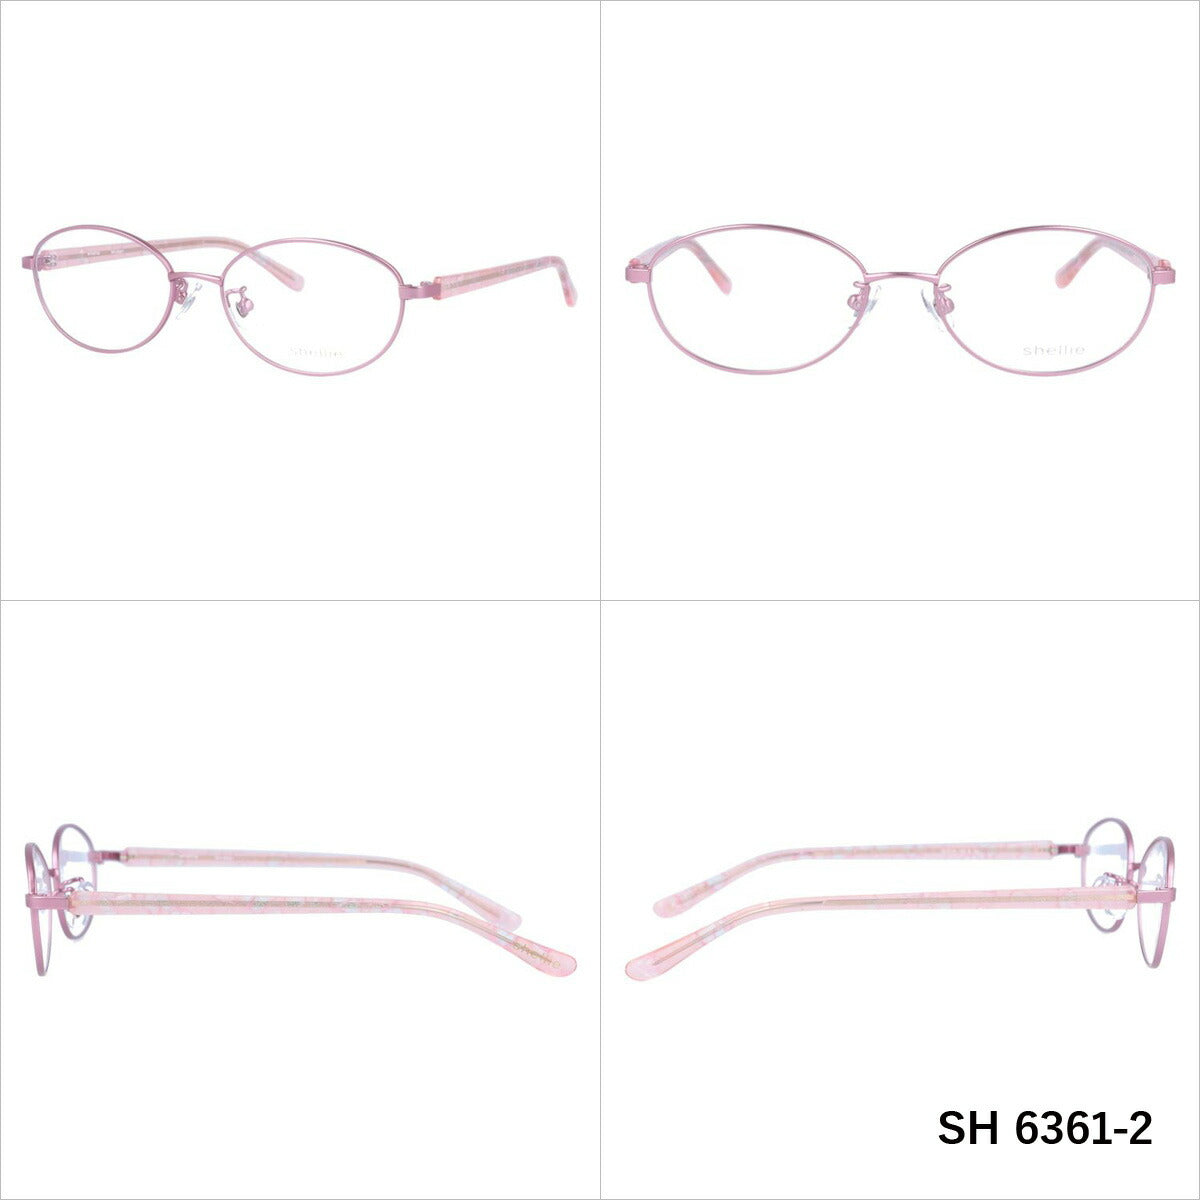 シェリー メガネ 眼鏡 フレーム 度付き 伊達 カラーレンズ メンズ レディース shellie ブランド SH 6361 52 オーバル | 老眼鏡 PCレンズ ブルーライトカット 遠近両用 対応可能 紫外線 対策 おすすめ 人気 プレゼント